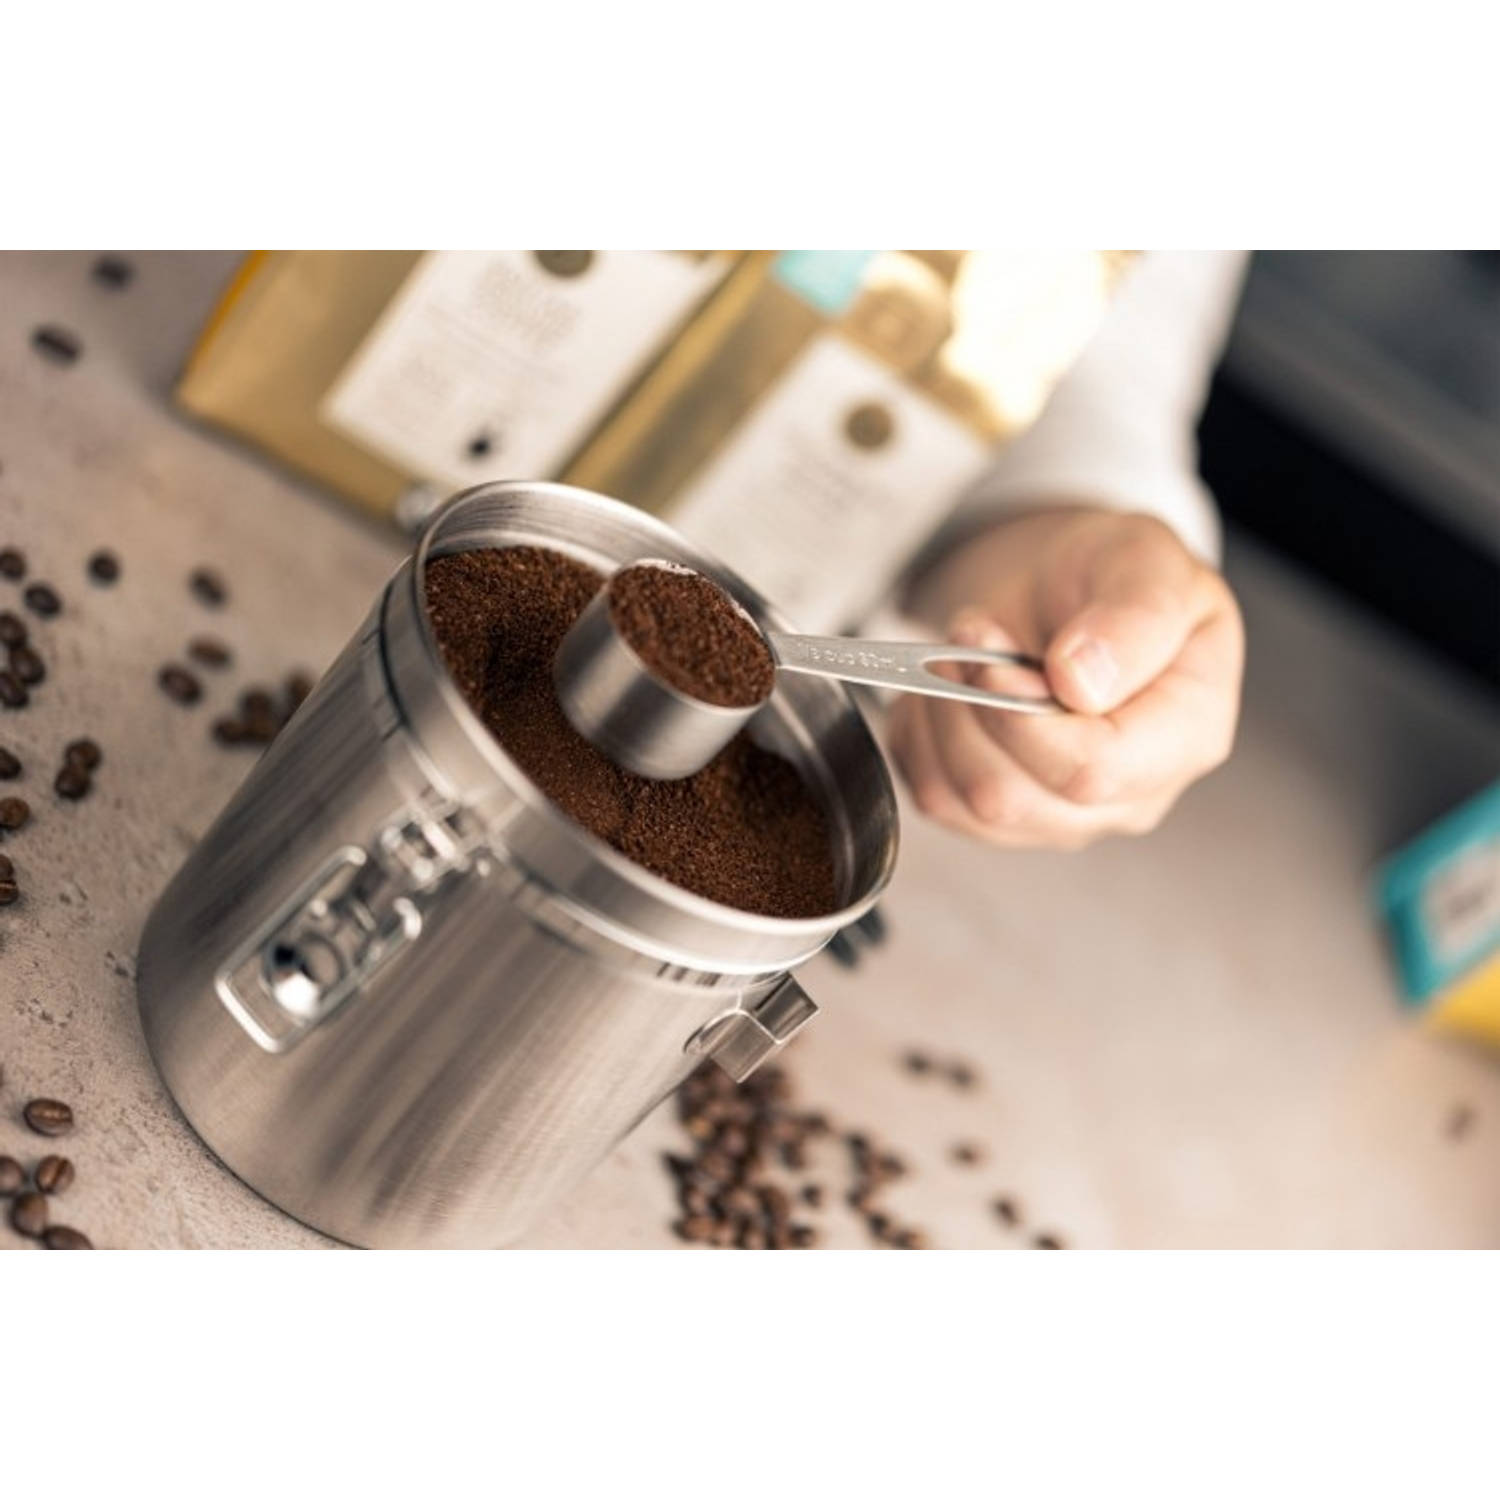 Gentleman vriendelijk Uitvoerbaar hooi Cafè Ole - Koffie Voorraadpot, 0.5 KG, Luchtdicht, Inclusief Maatschepje -  Cafè Ole | Blokker